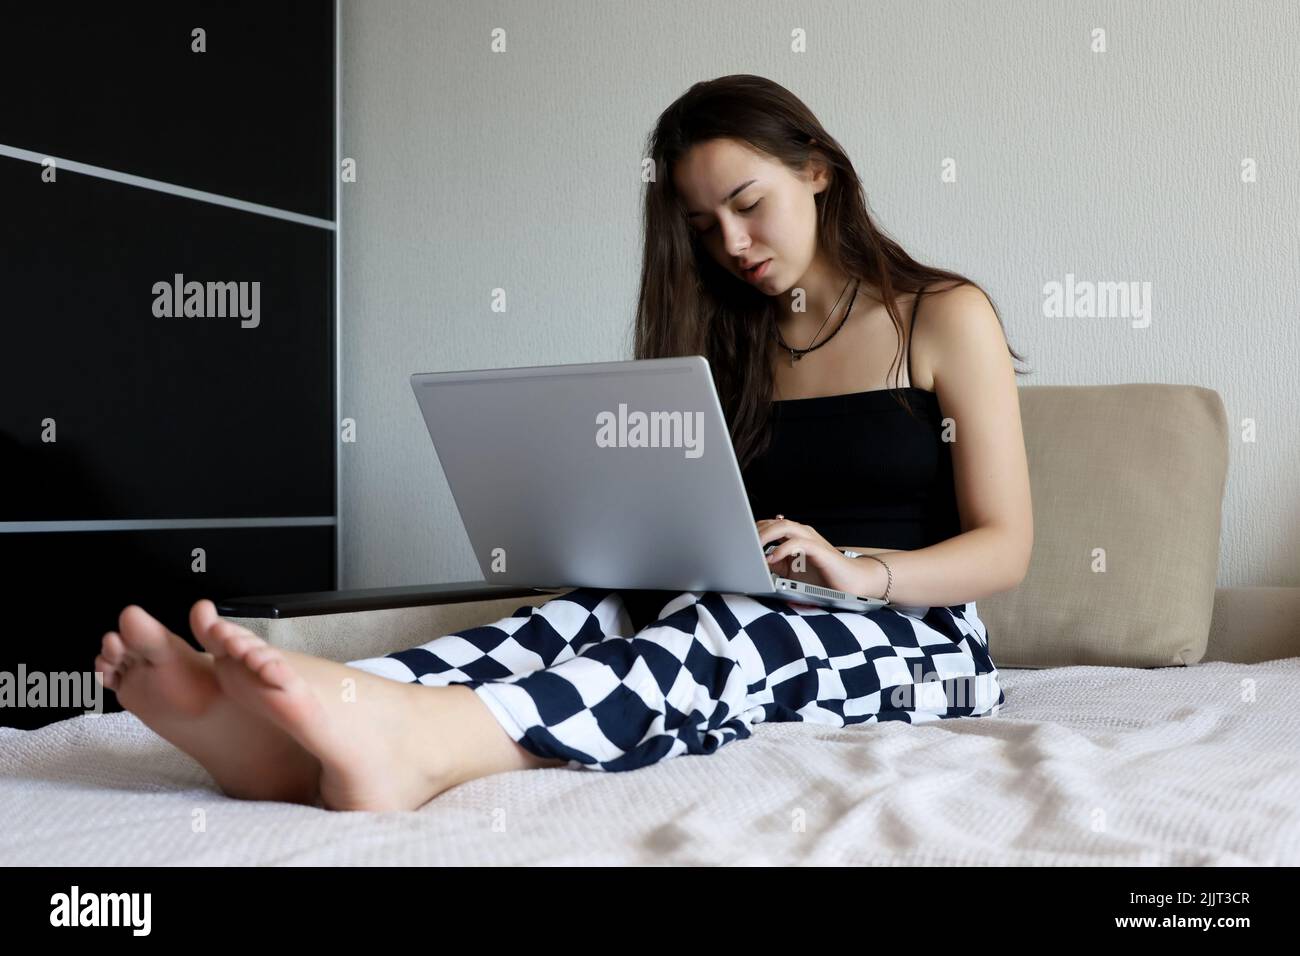 Jolie jeune fille avec de longs cheveux portant noir dessus assis avec un ordinateur portable sur le canapé. Concept de travail, d'étude ou de loisirs à la maison Banque D'Images